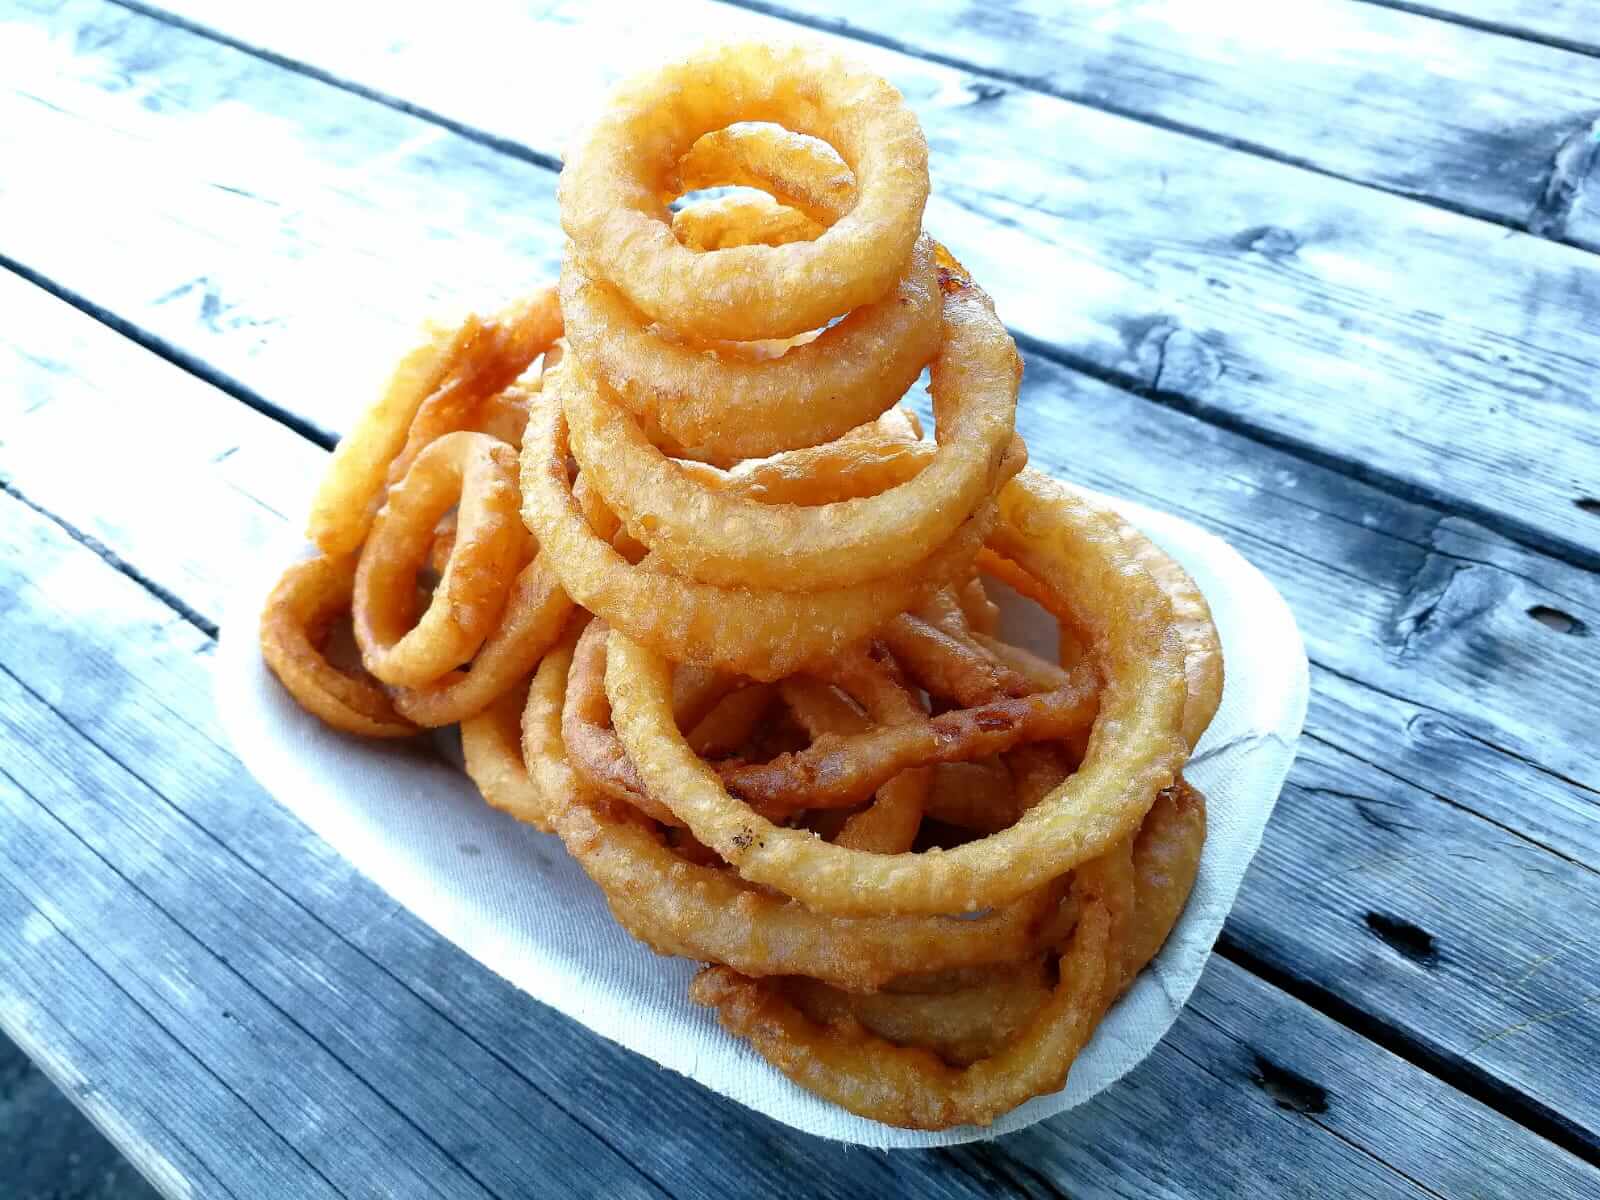 Sonny's onion rings